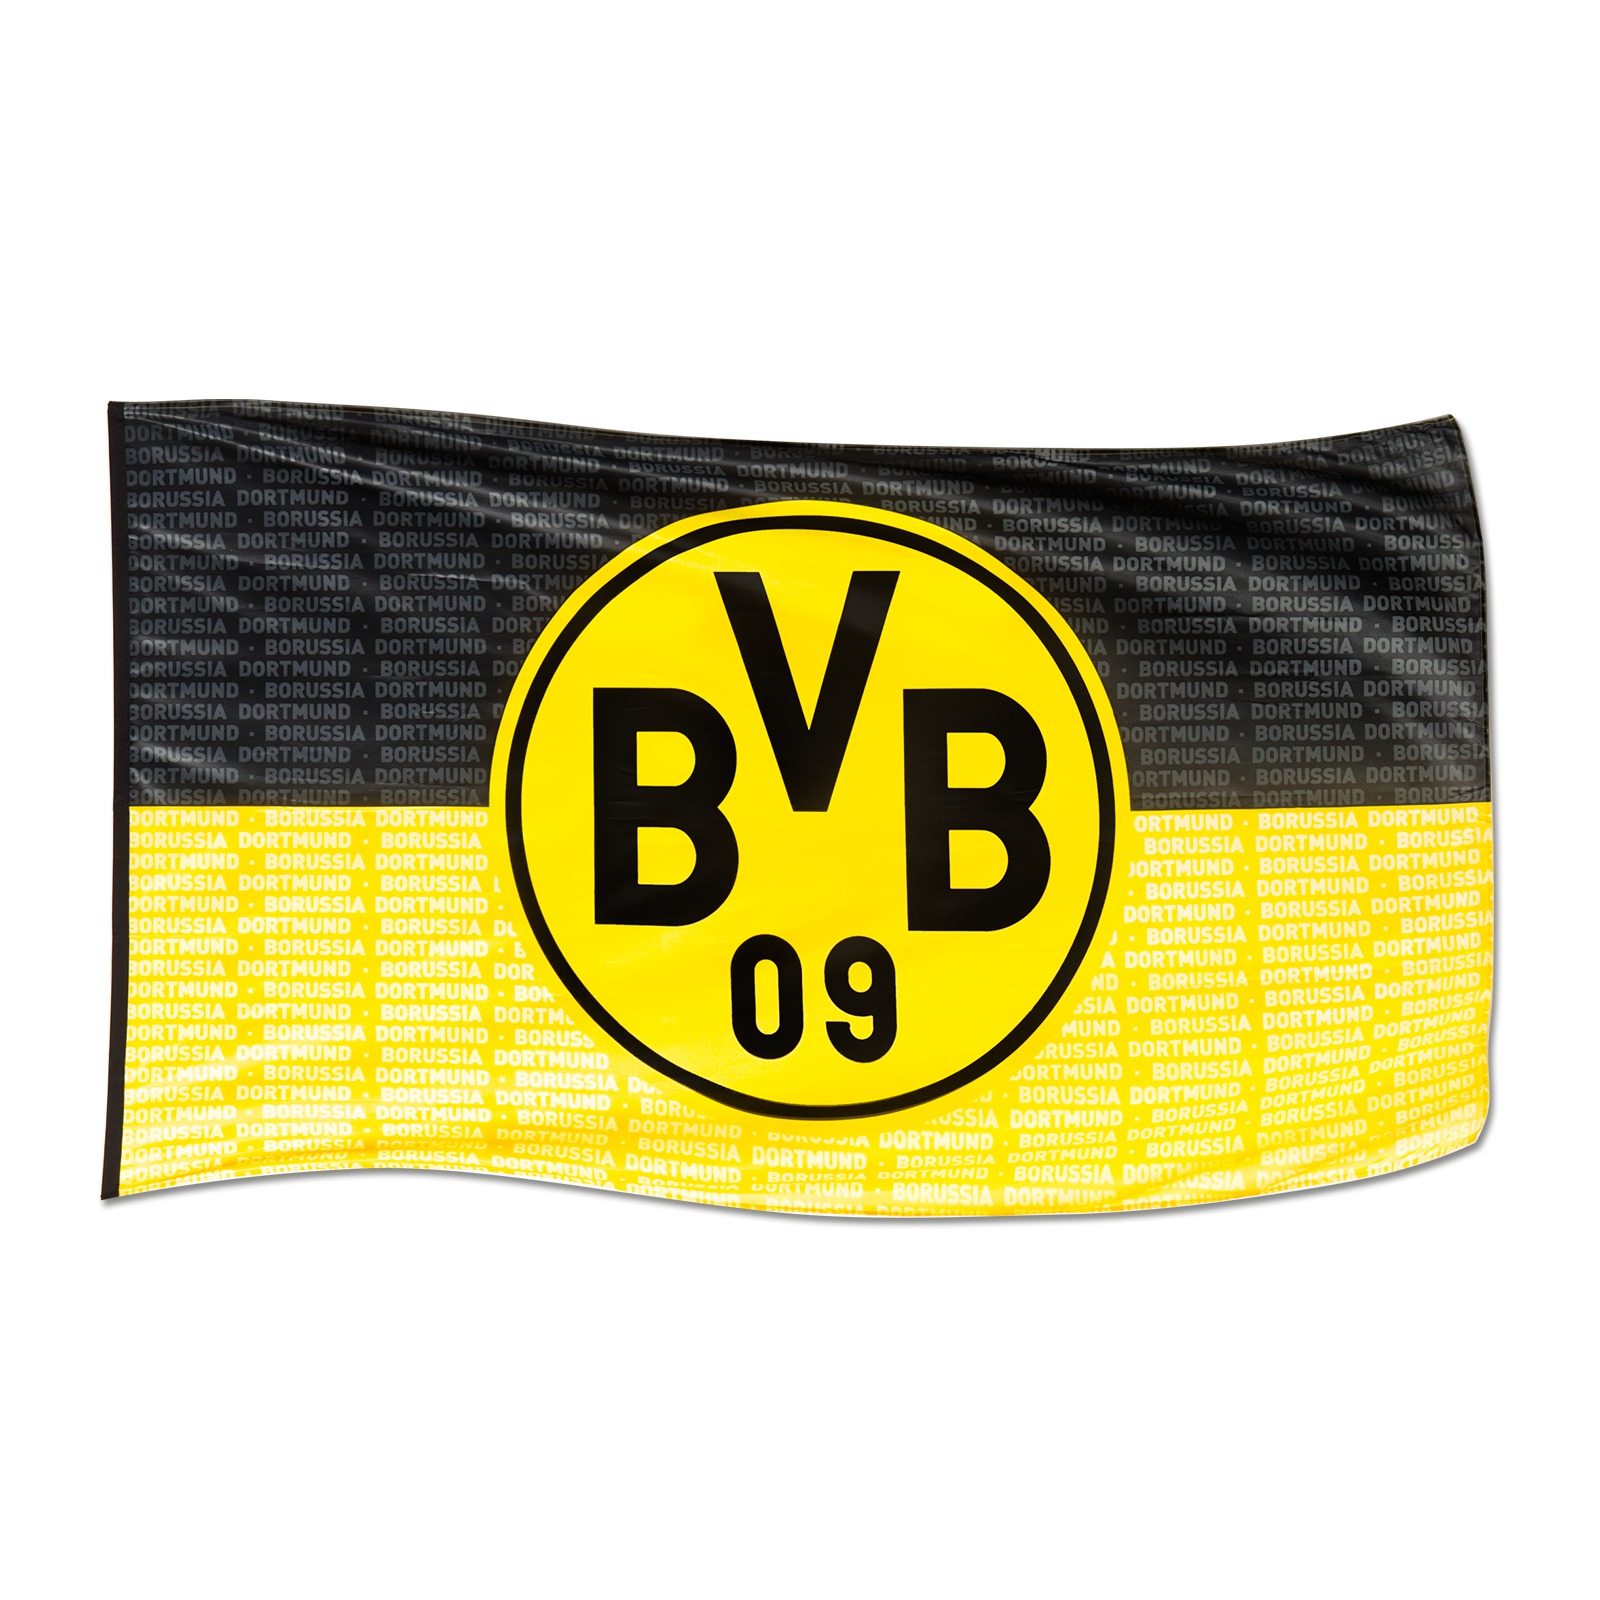 Fahne BVB 09 Borussia Dortmund Balkonfahne 150 x 100 cm plus Lesezeichen I lo 